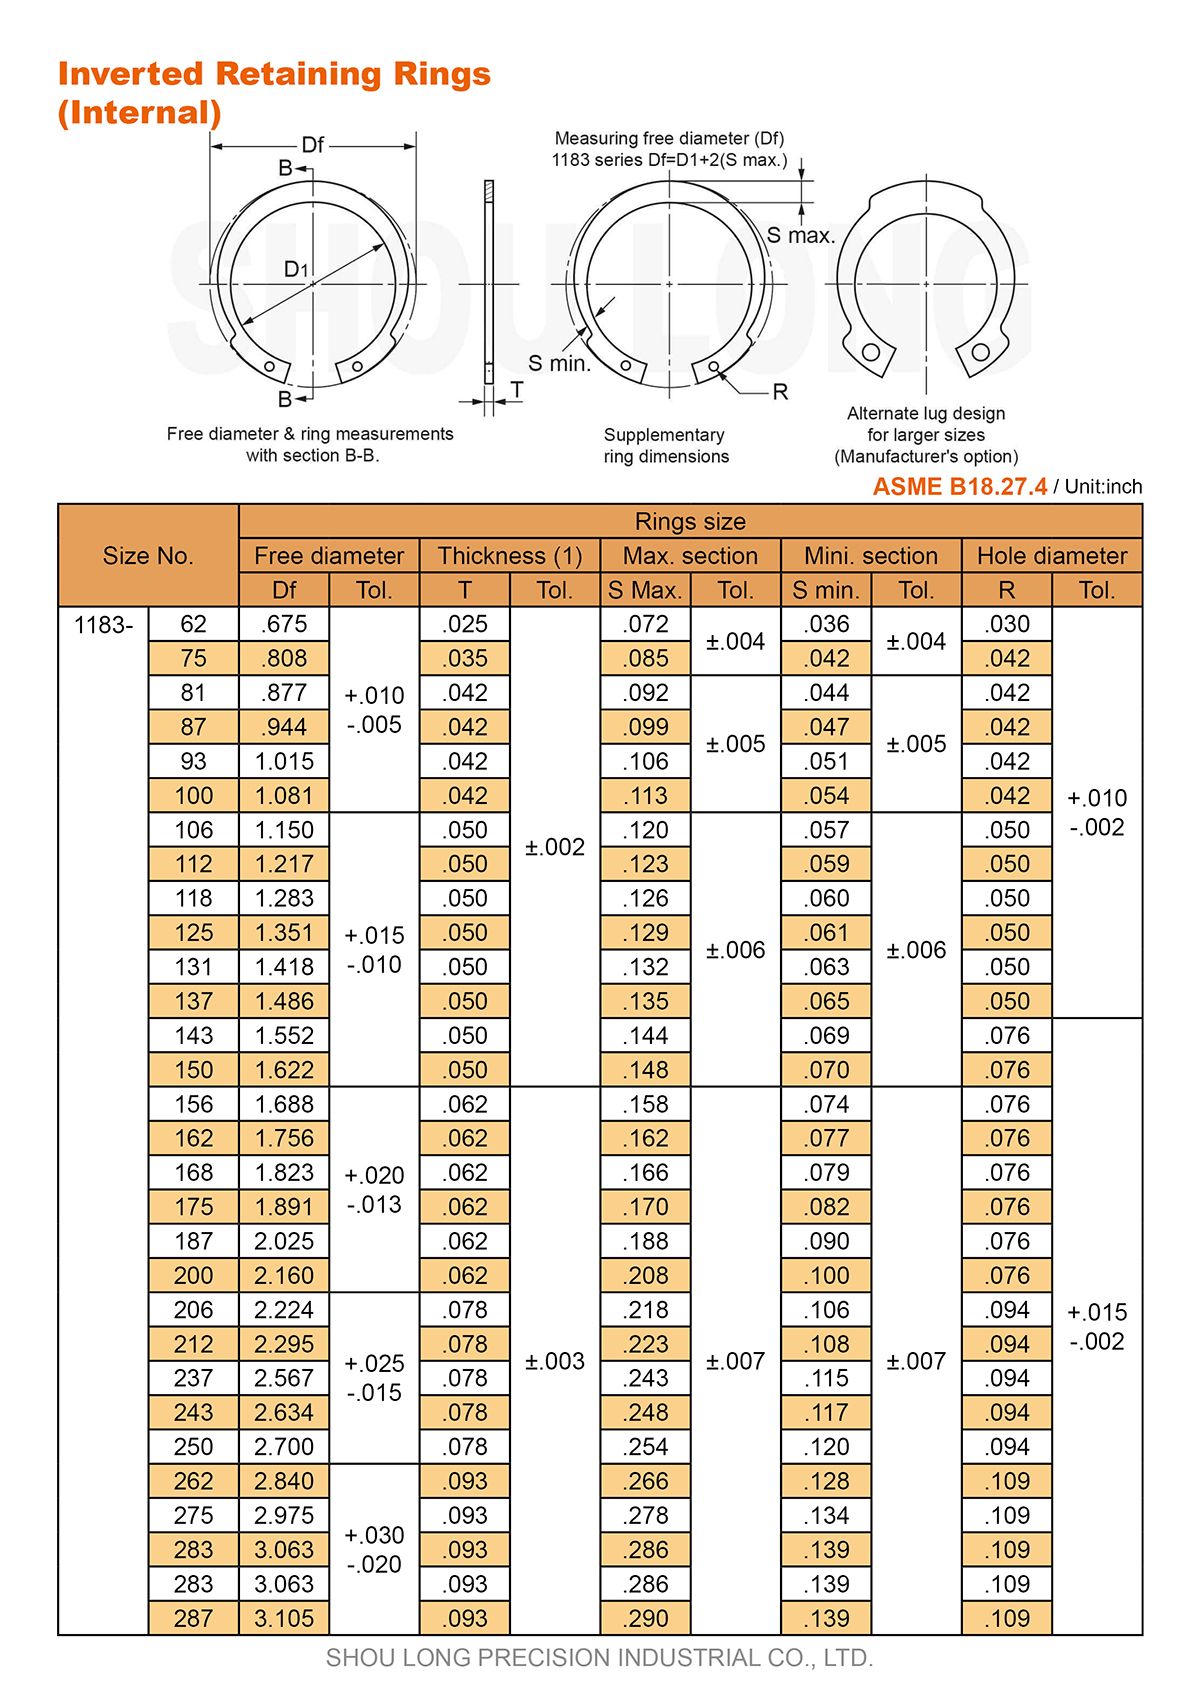 Specifiche degli anelli di trattenimento invertiti in pollice per fori ASME/ANSI B18.27.4 - 1